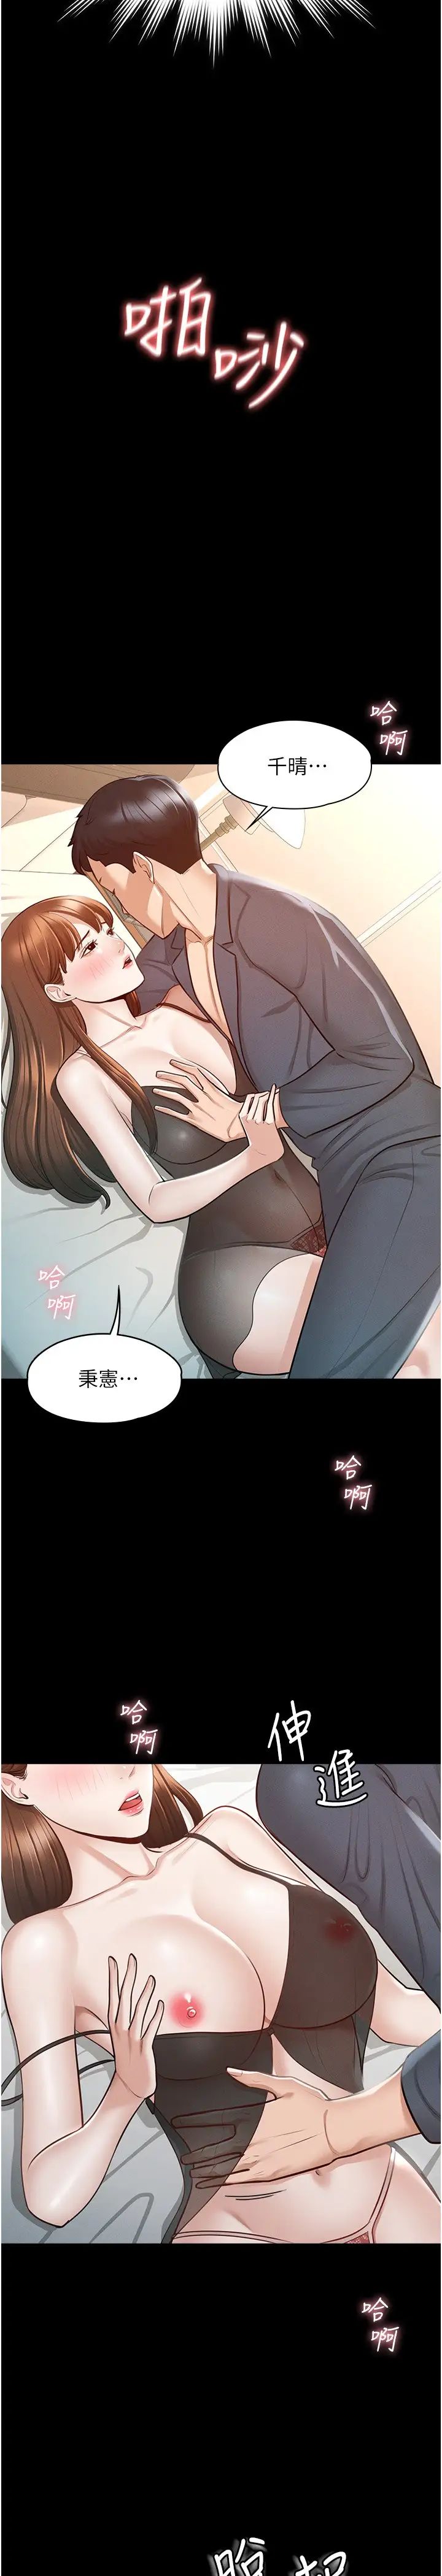 韩国污漫画 超級公務員 第9话 欲火焚身的千晴 13